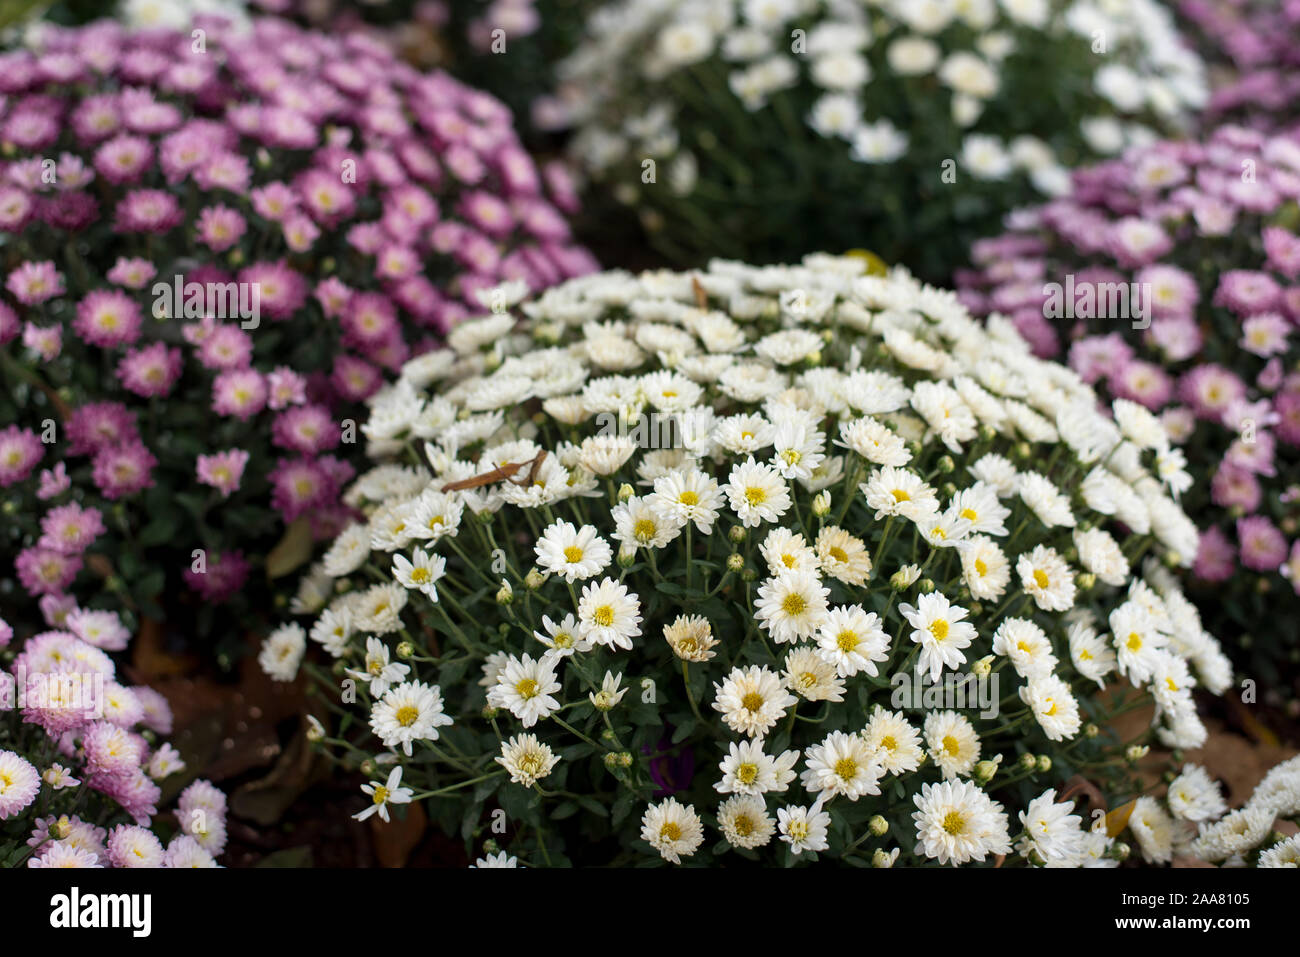 Sevilla, Spanien. Paris Daisy, Marguerite Daisy, oder einfach Marguerite (Argyranthemum frutescens). Weiß, rosa und purpur Daisy Sträuchern. Stockfoto